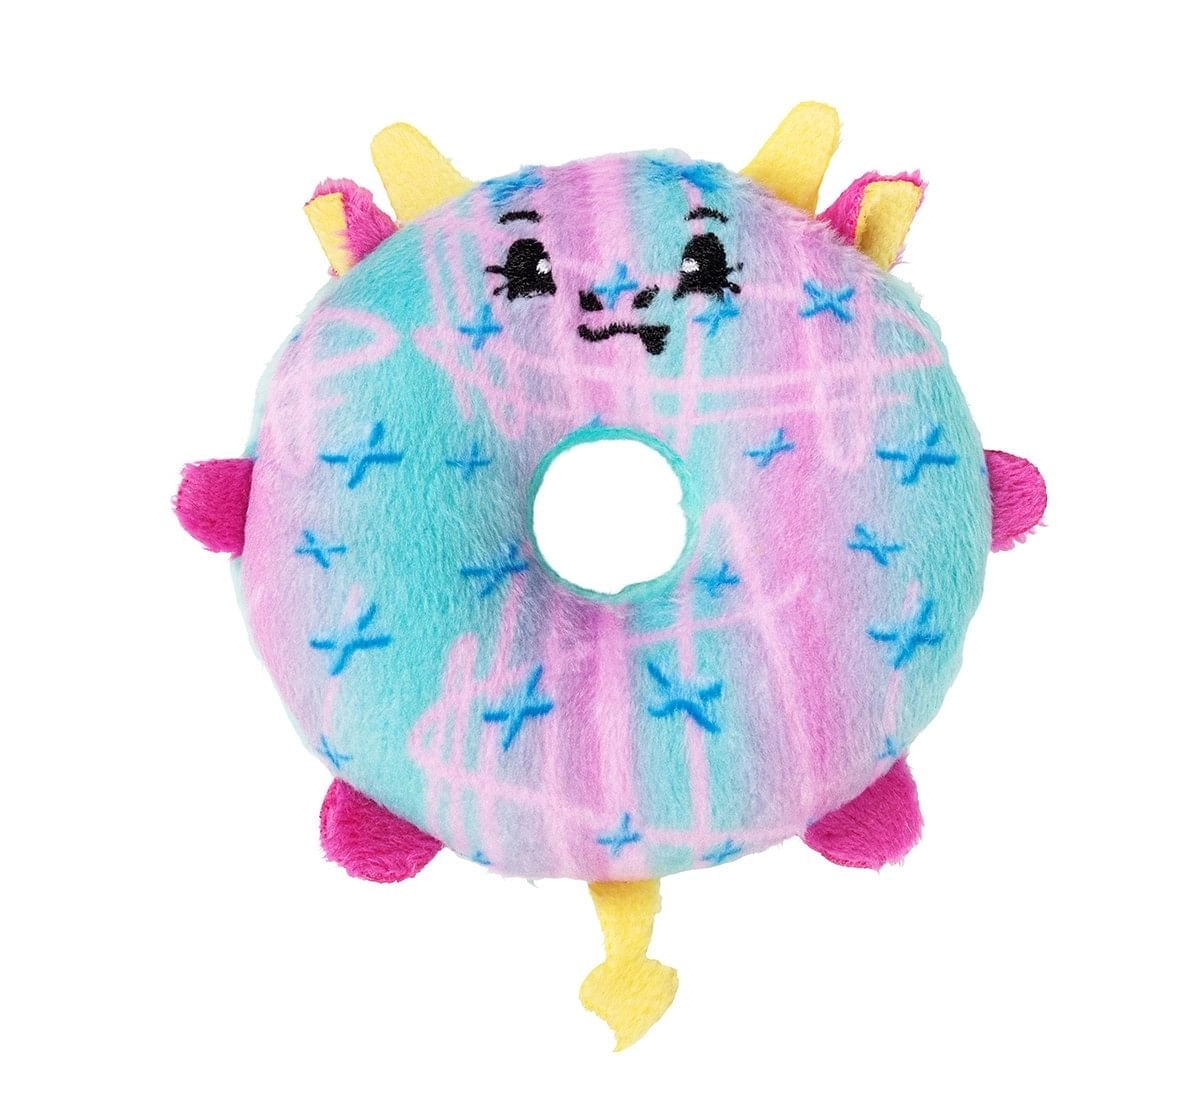 Pikmi Pops Surprise Doughmi Single Pack Novelty for age 5Y+ - 11.2 Cm 